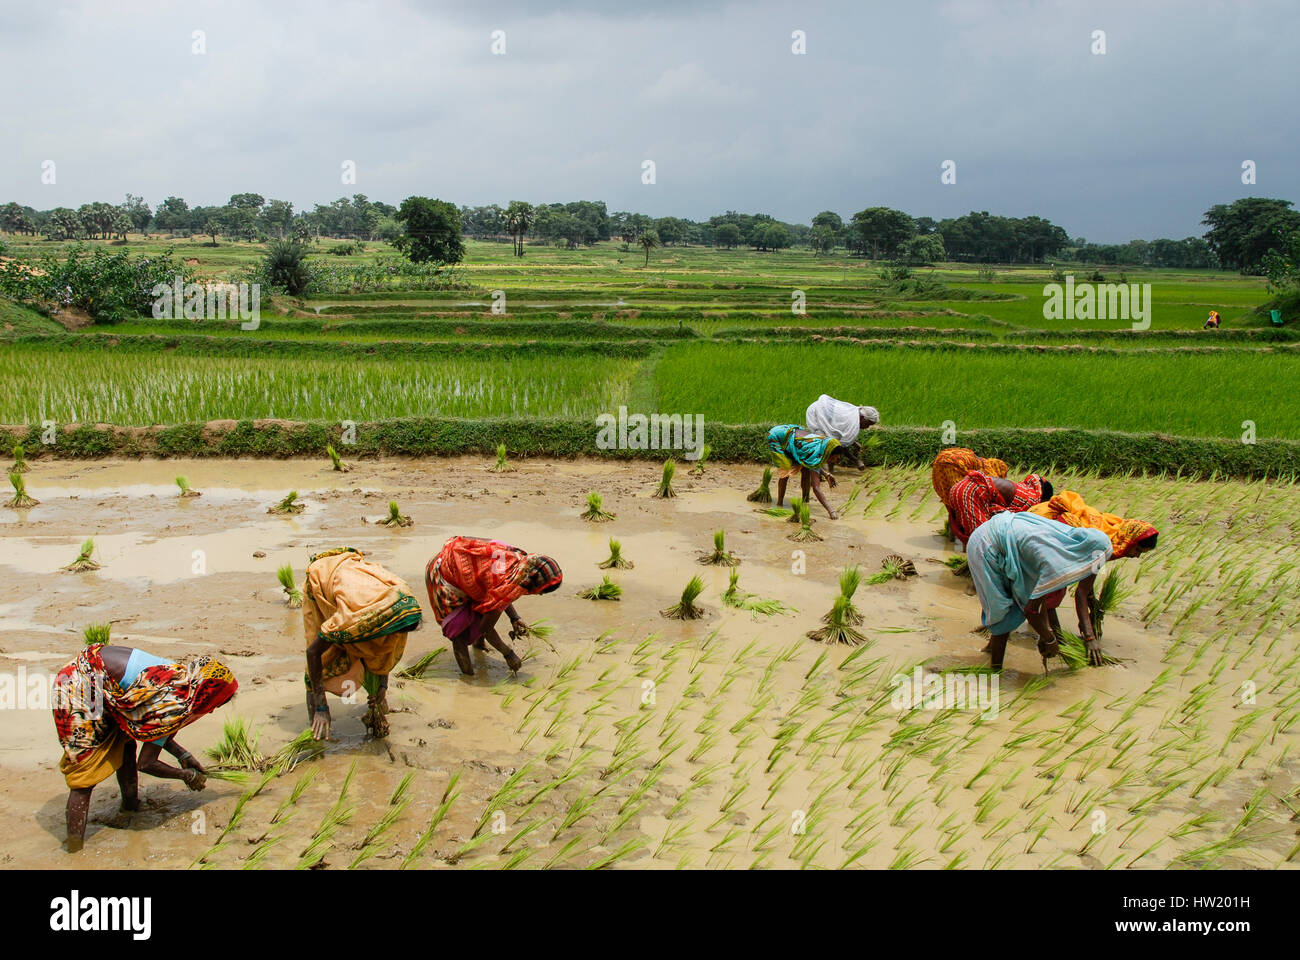 Indien Westbengal, Dorfes Gandhiji Songha, Reisanbau, Neupflanzung von Reis Sämlinge / INDIEN Westbengalen, Dorf Gandhiji Songha, Landwirtschaft, Umpflanzen von Reissetzlingen Stockfoto